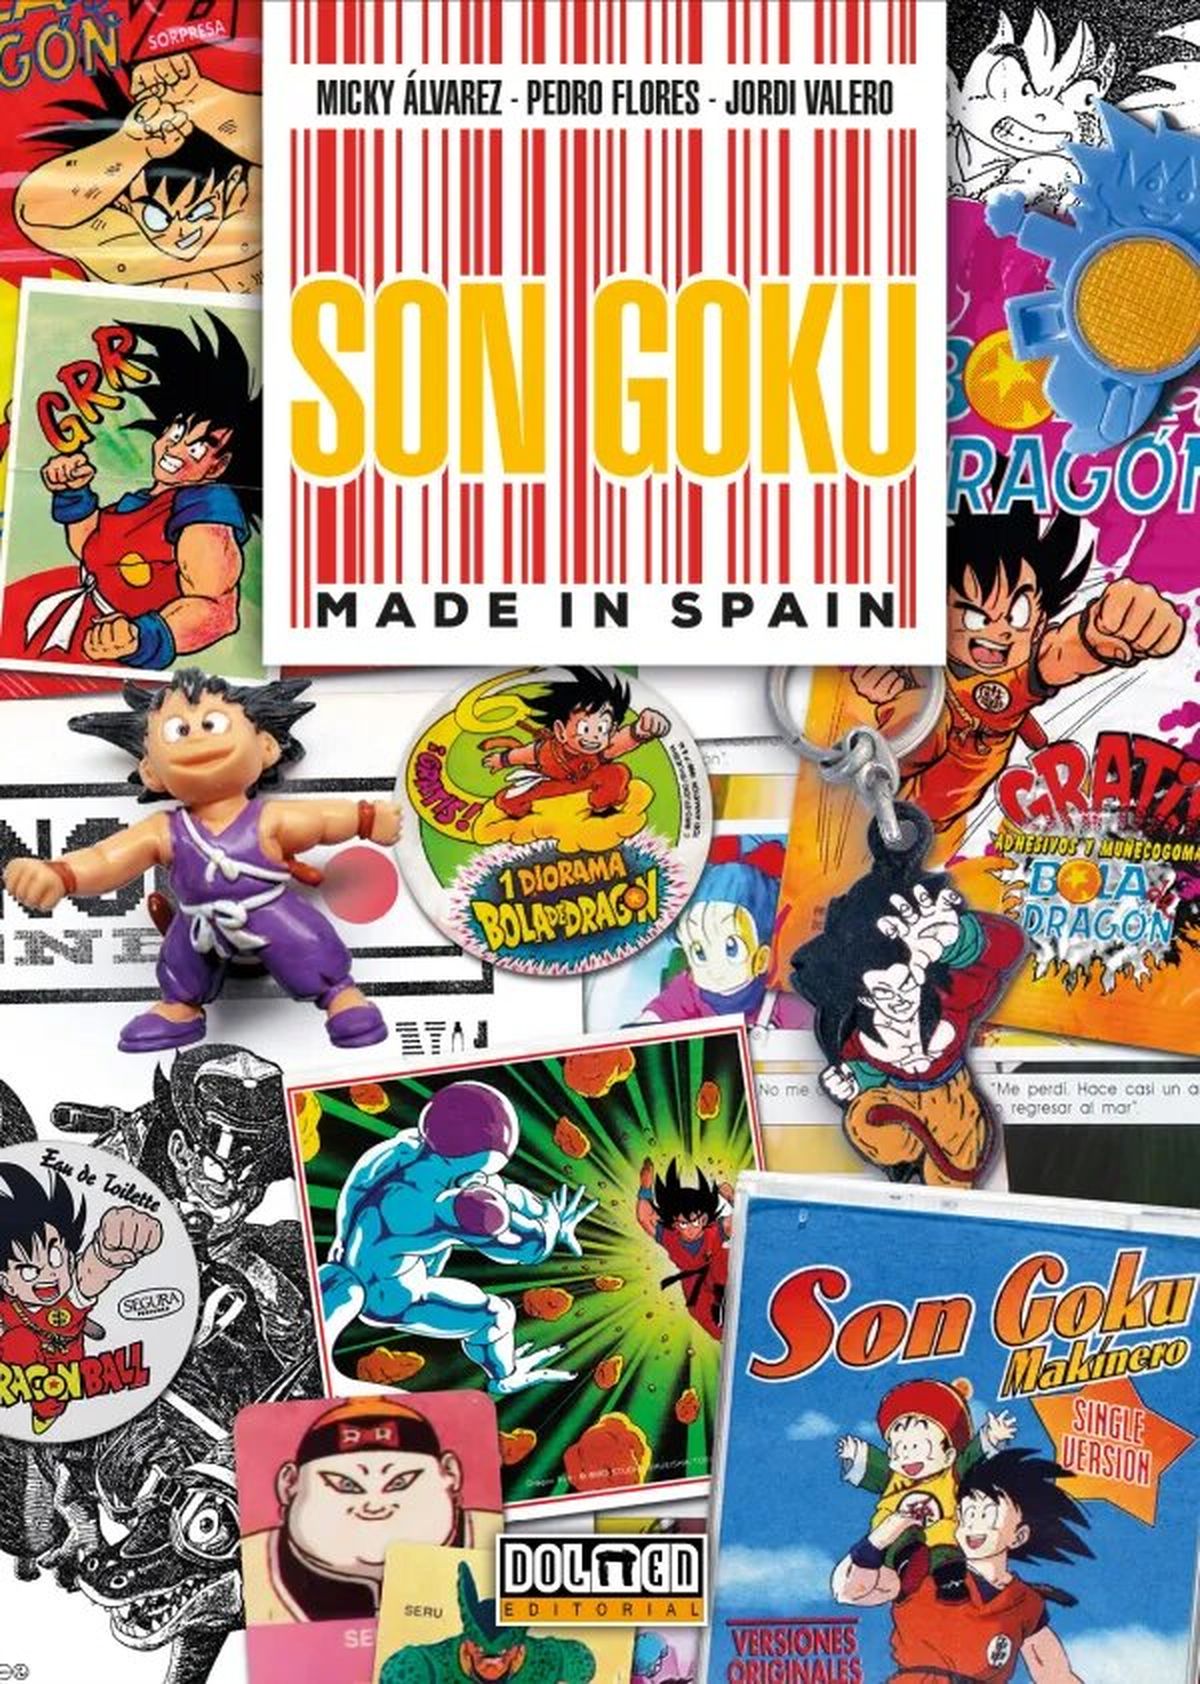 Dragon Ball - Nace Son Goku: Made in Spain, el nuevo libro de la serie centrado en el merchandising noventero español